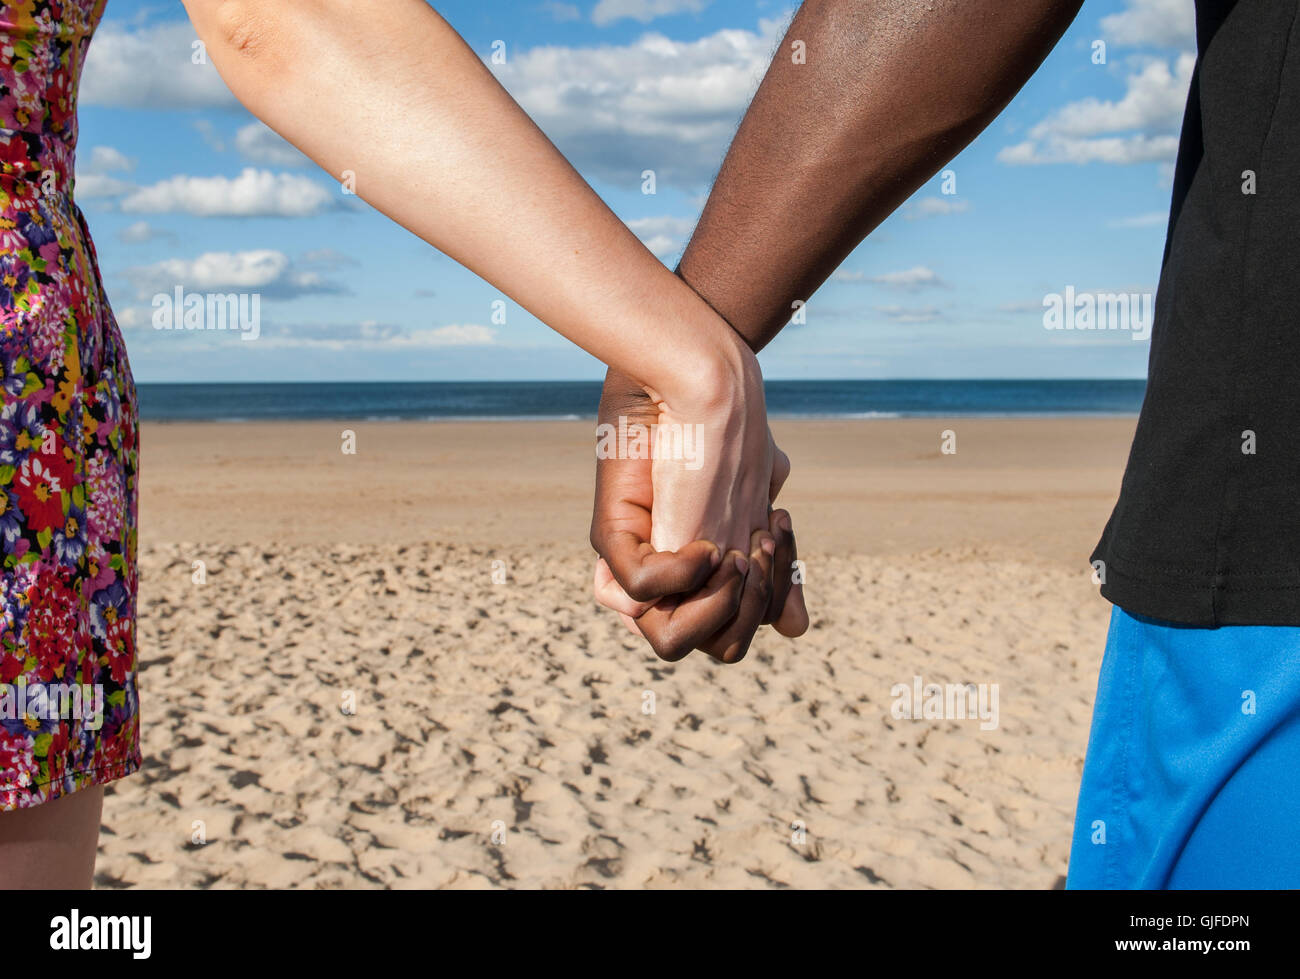 Tenendo le mani la parte del corpo che mostra maschile e femminile multiculturale di razza mista il mare e la sabbia insieme amore il concetto di pace Foto Stock